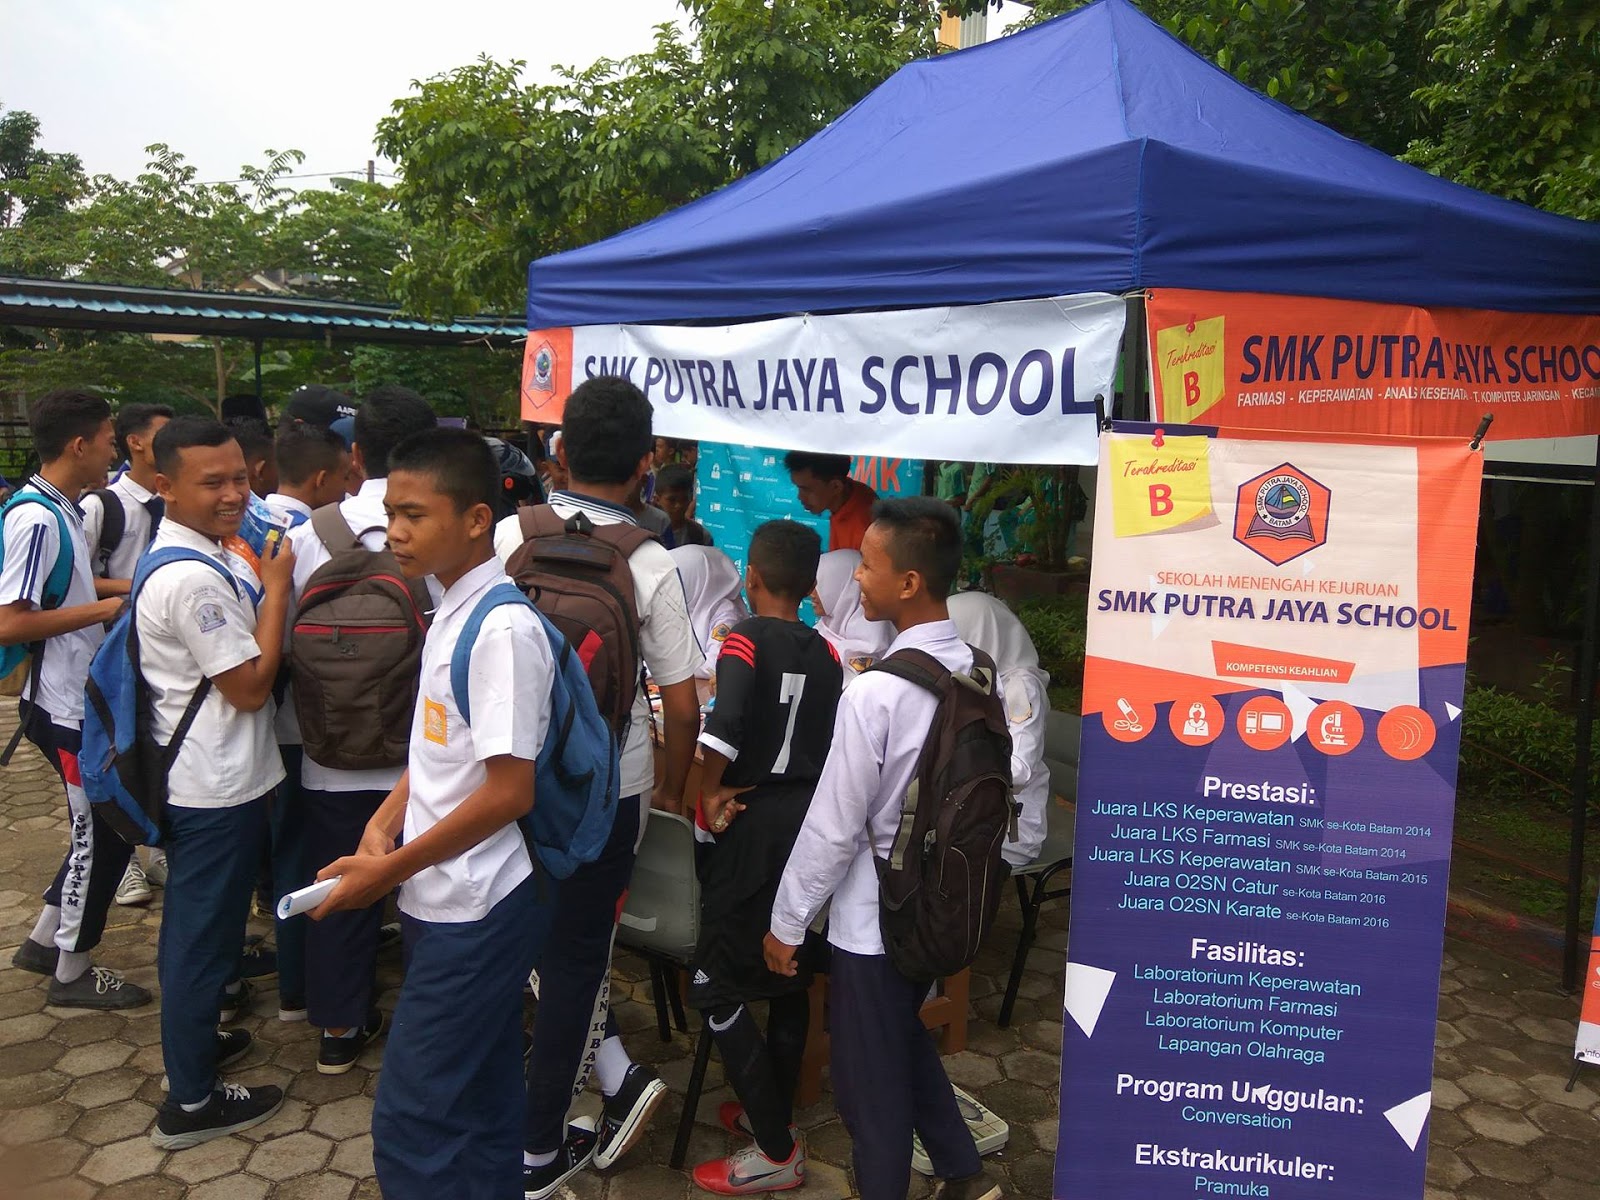 BAKSOS SMK Putra Jaya School di SMPN 30 Batam